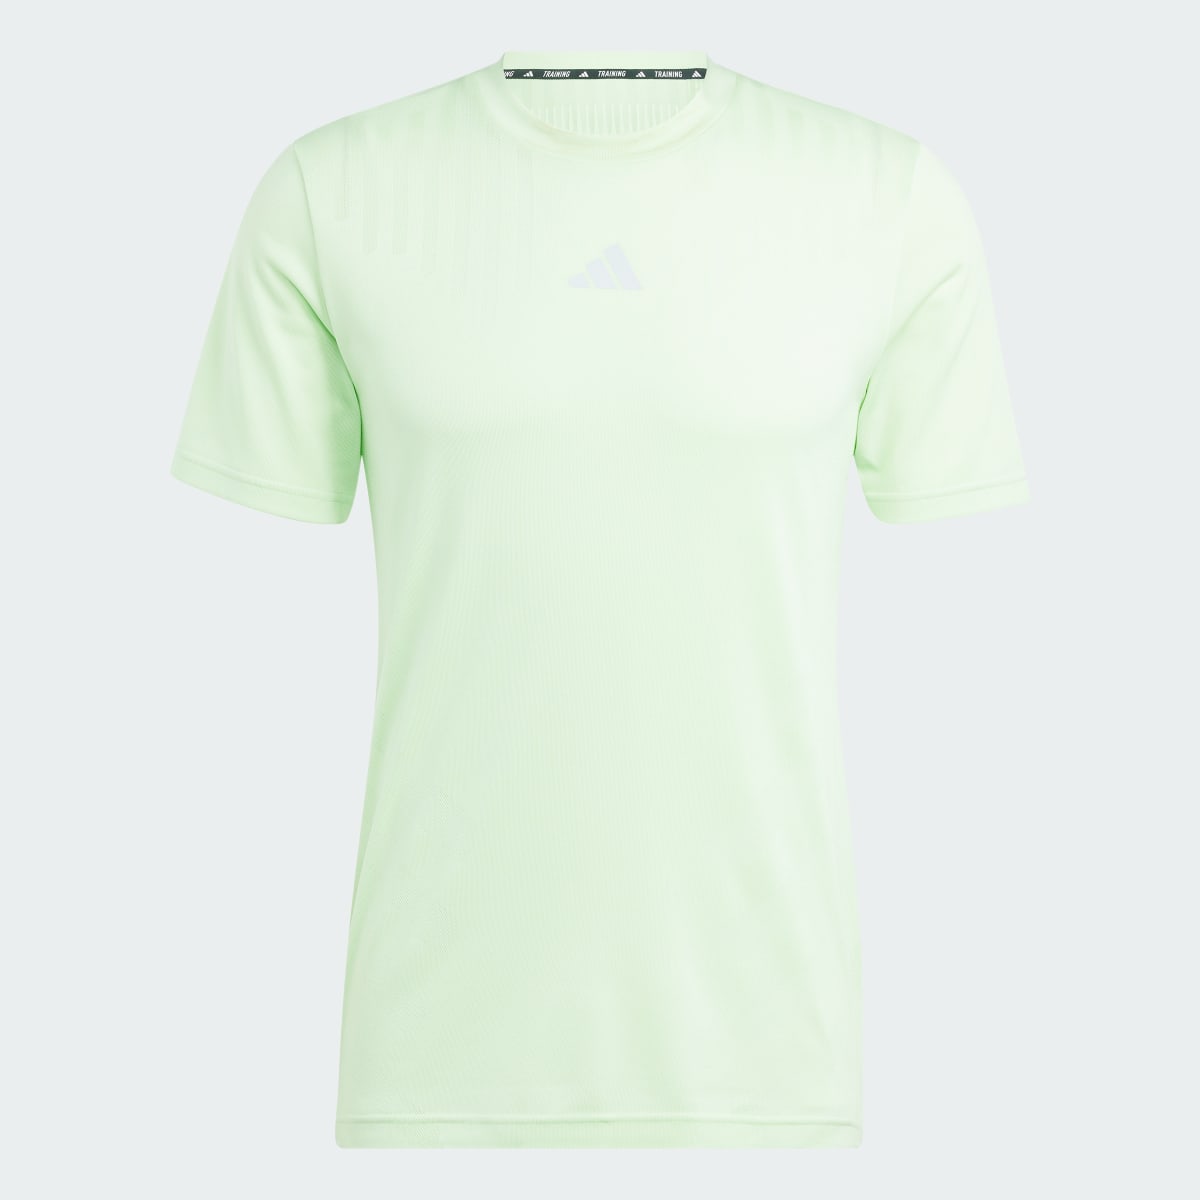 Adidas T-shirt entraînement HIIT Airchill. 5